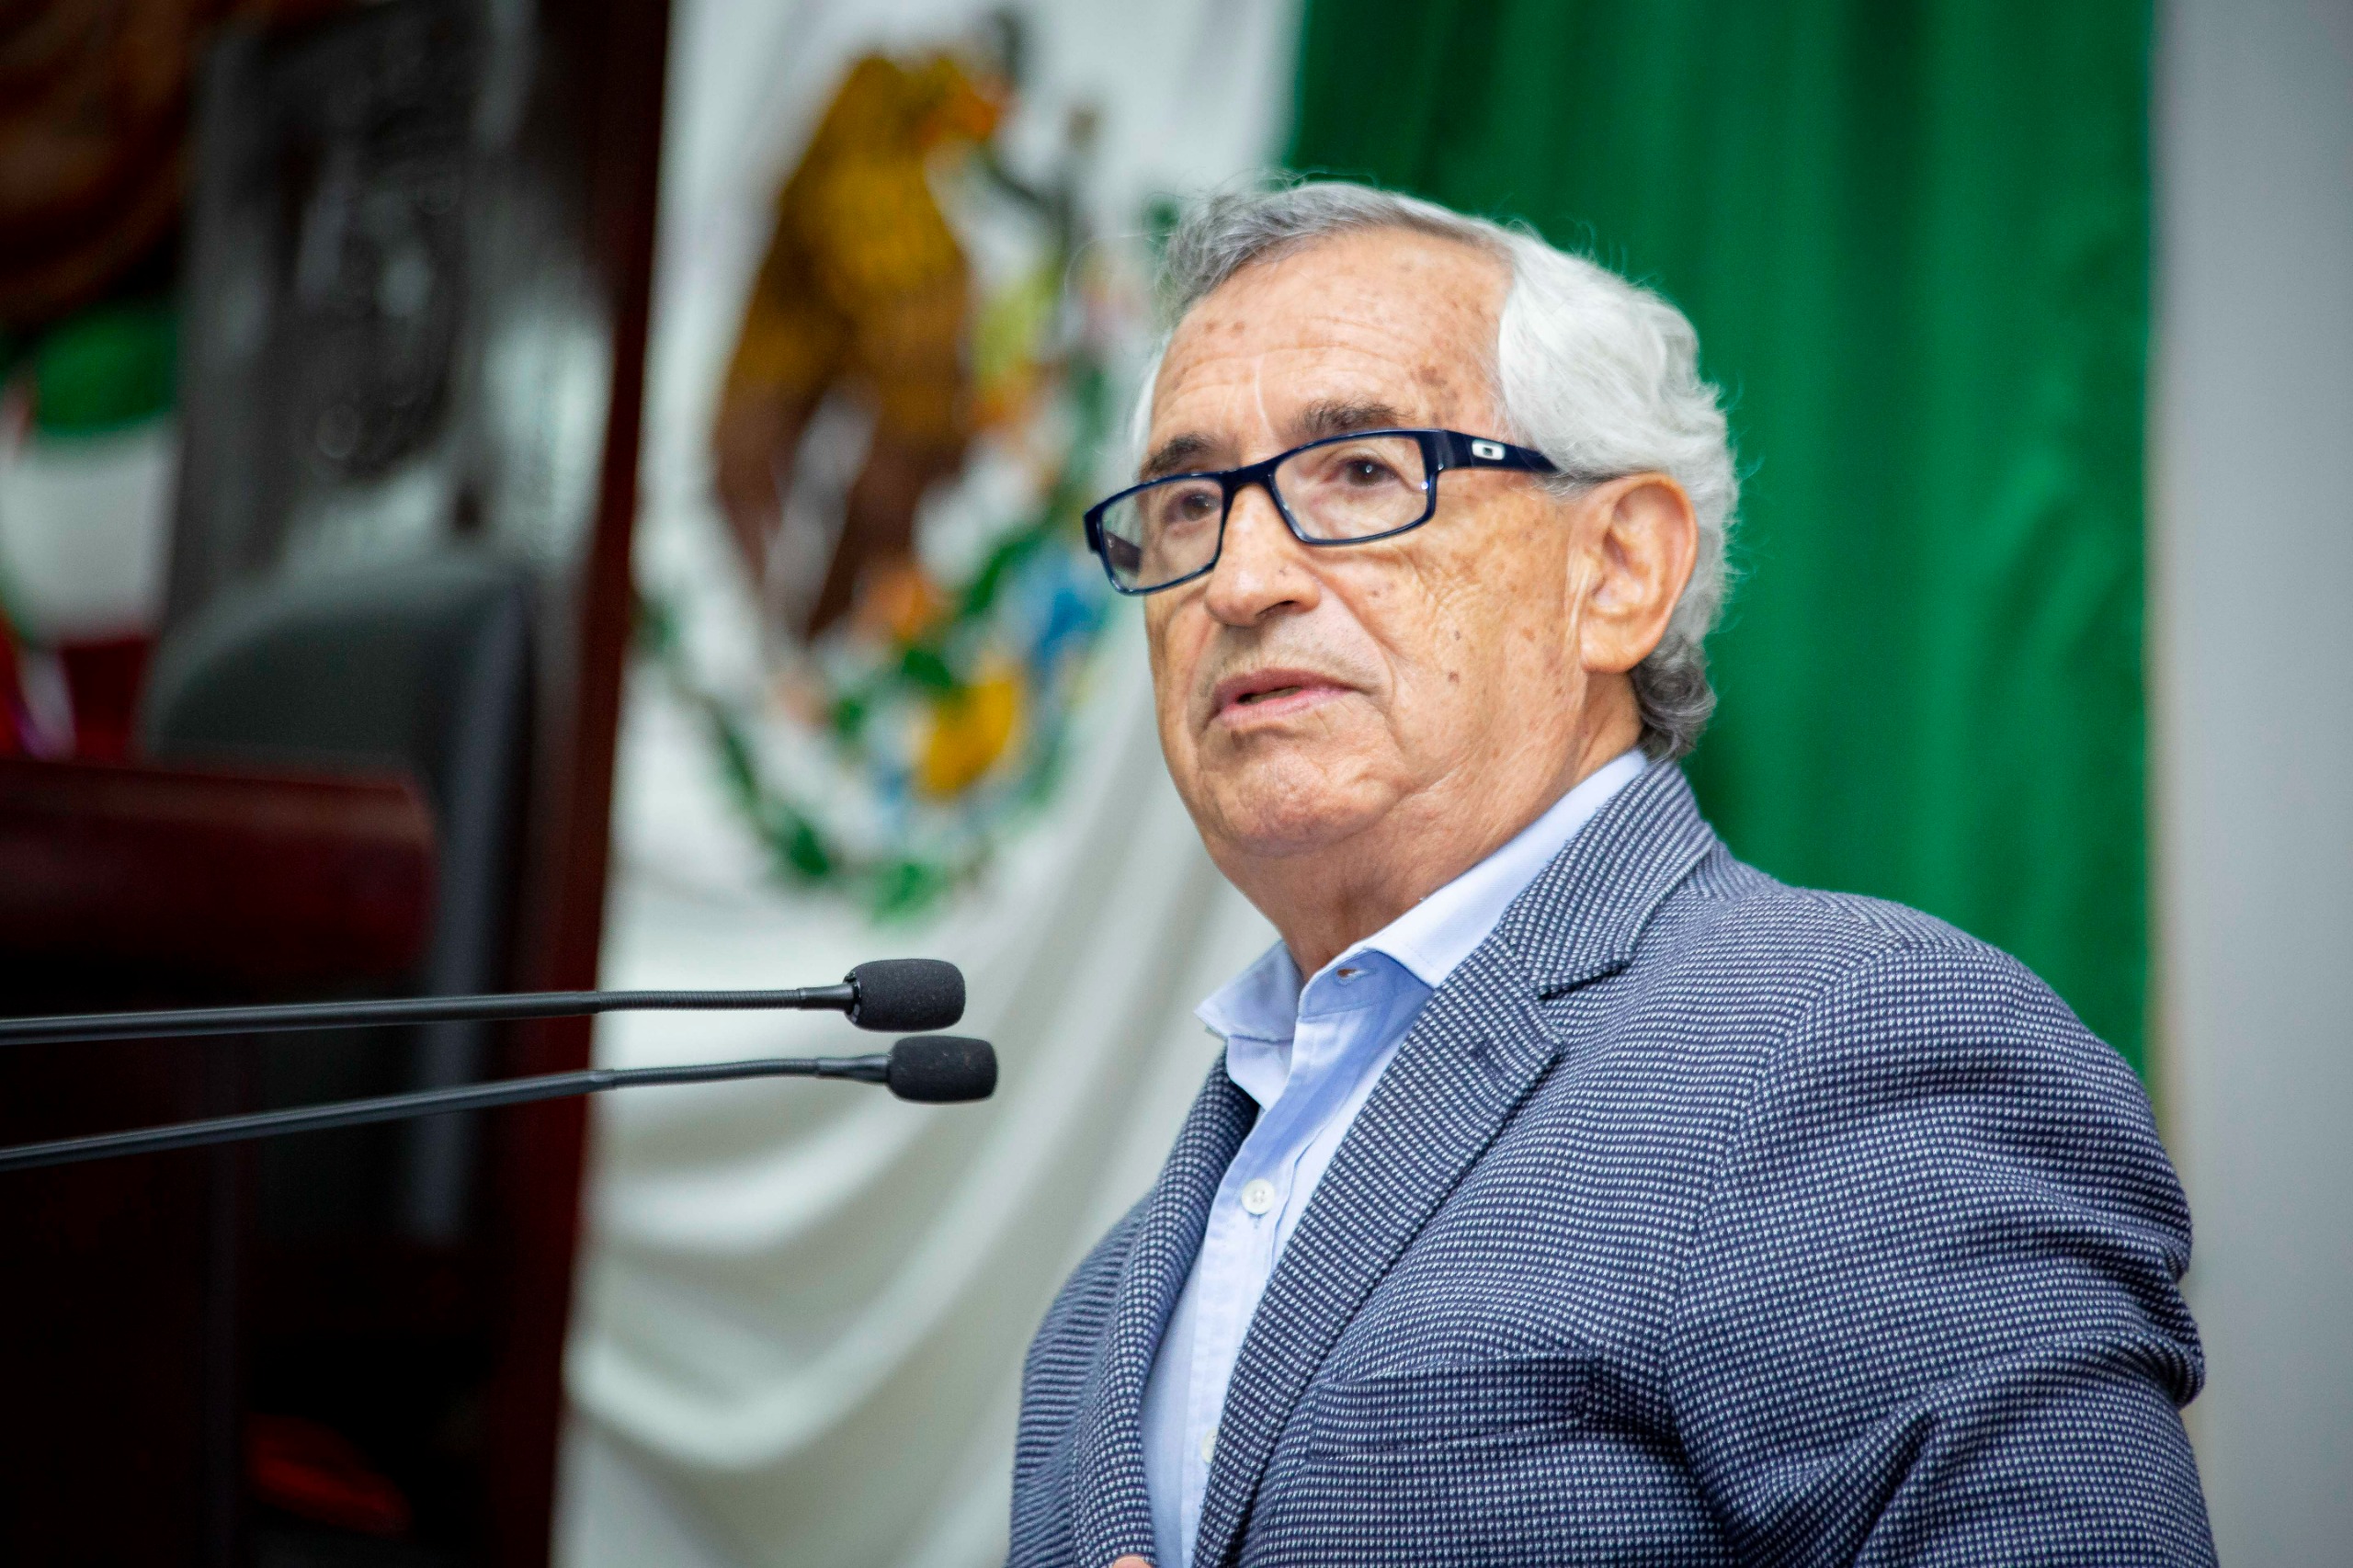 Los jóvenes deben participar en la definición de políticas públicas: Raúl Bonifaz